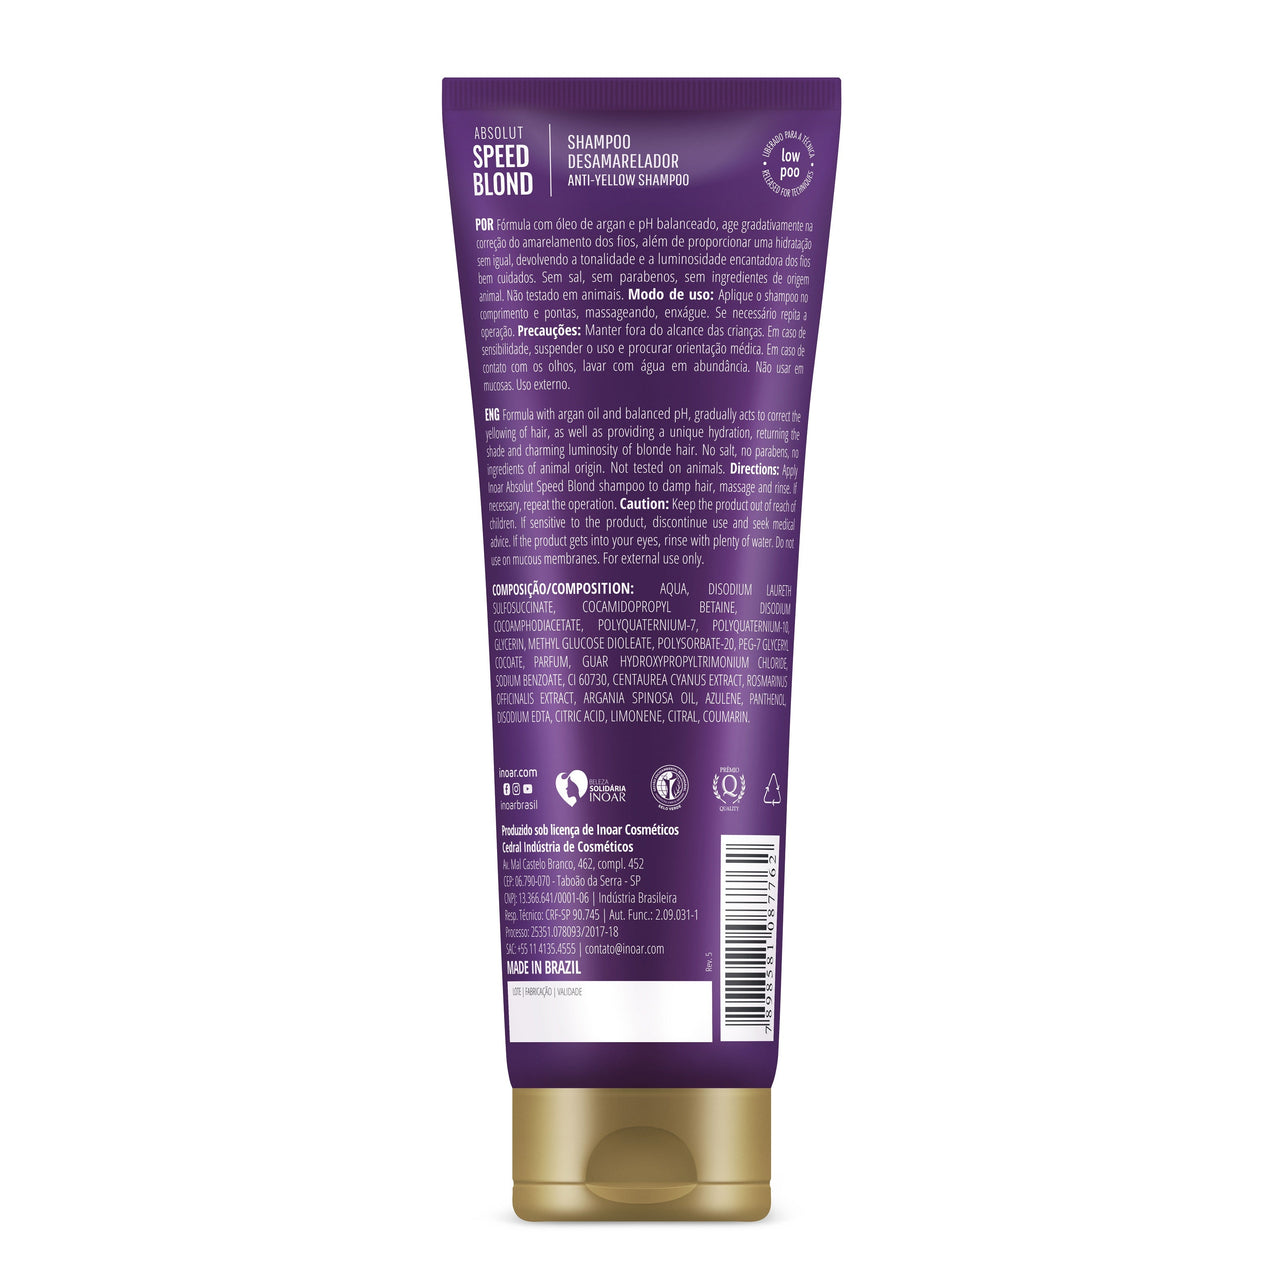 INOAR Speed Blond Shampoo - šampūnas šviesiems plaukams 240 ml